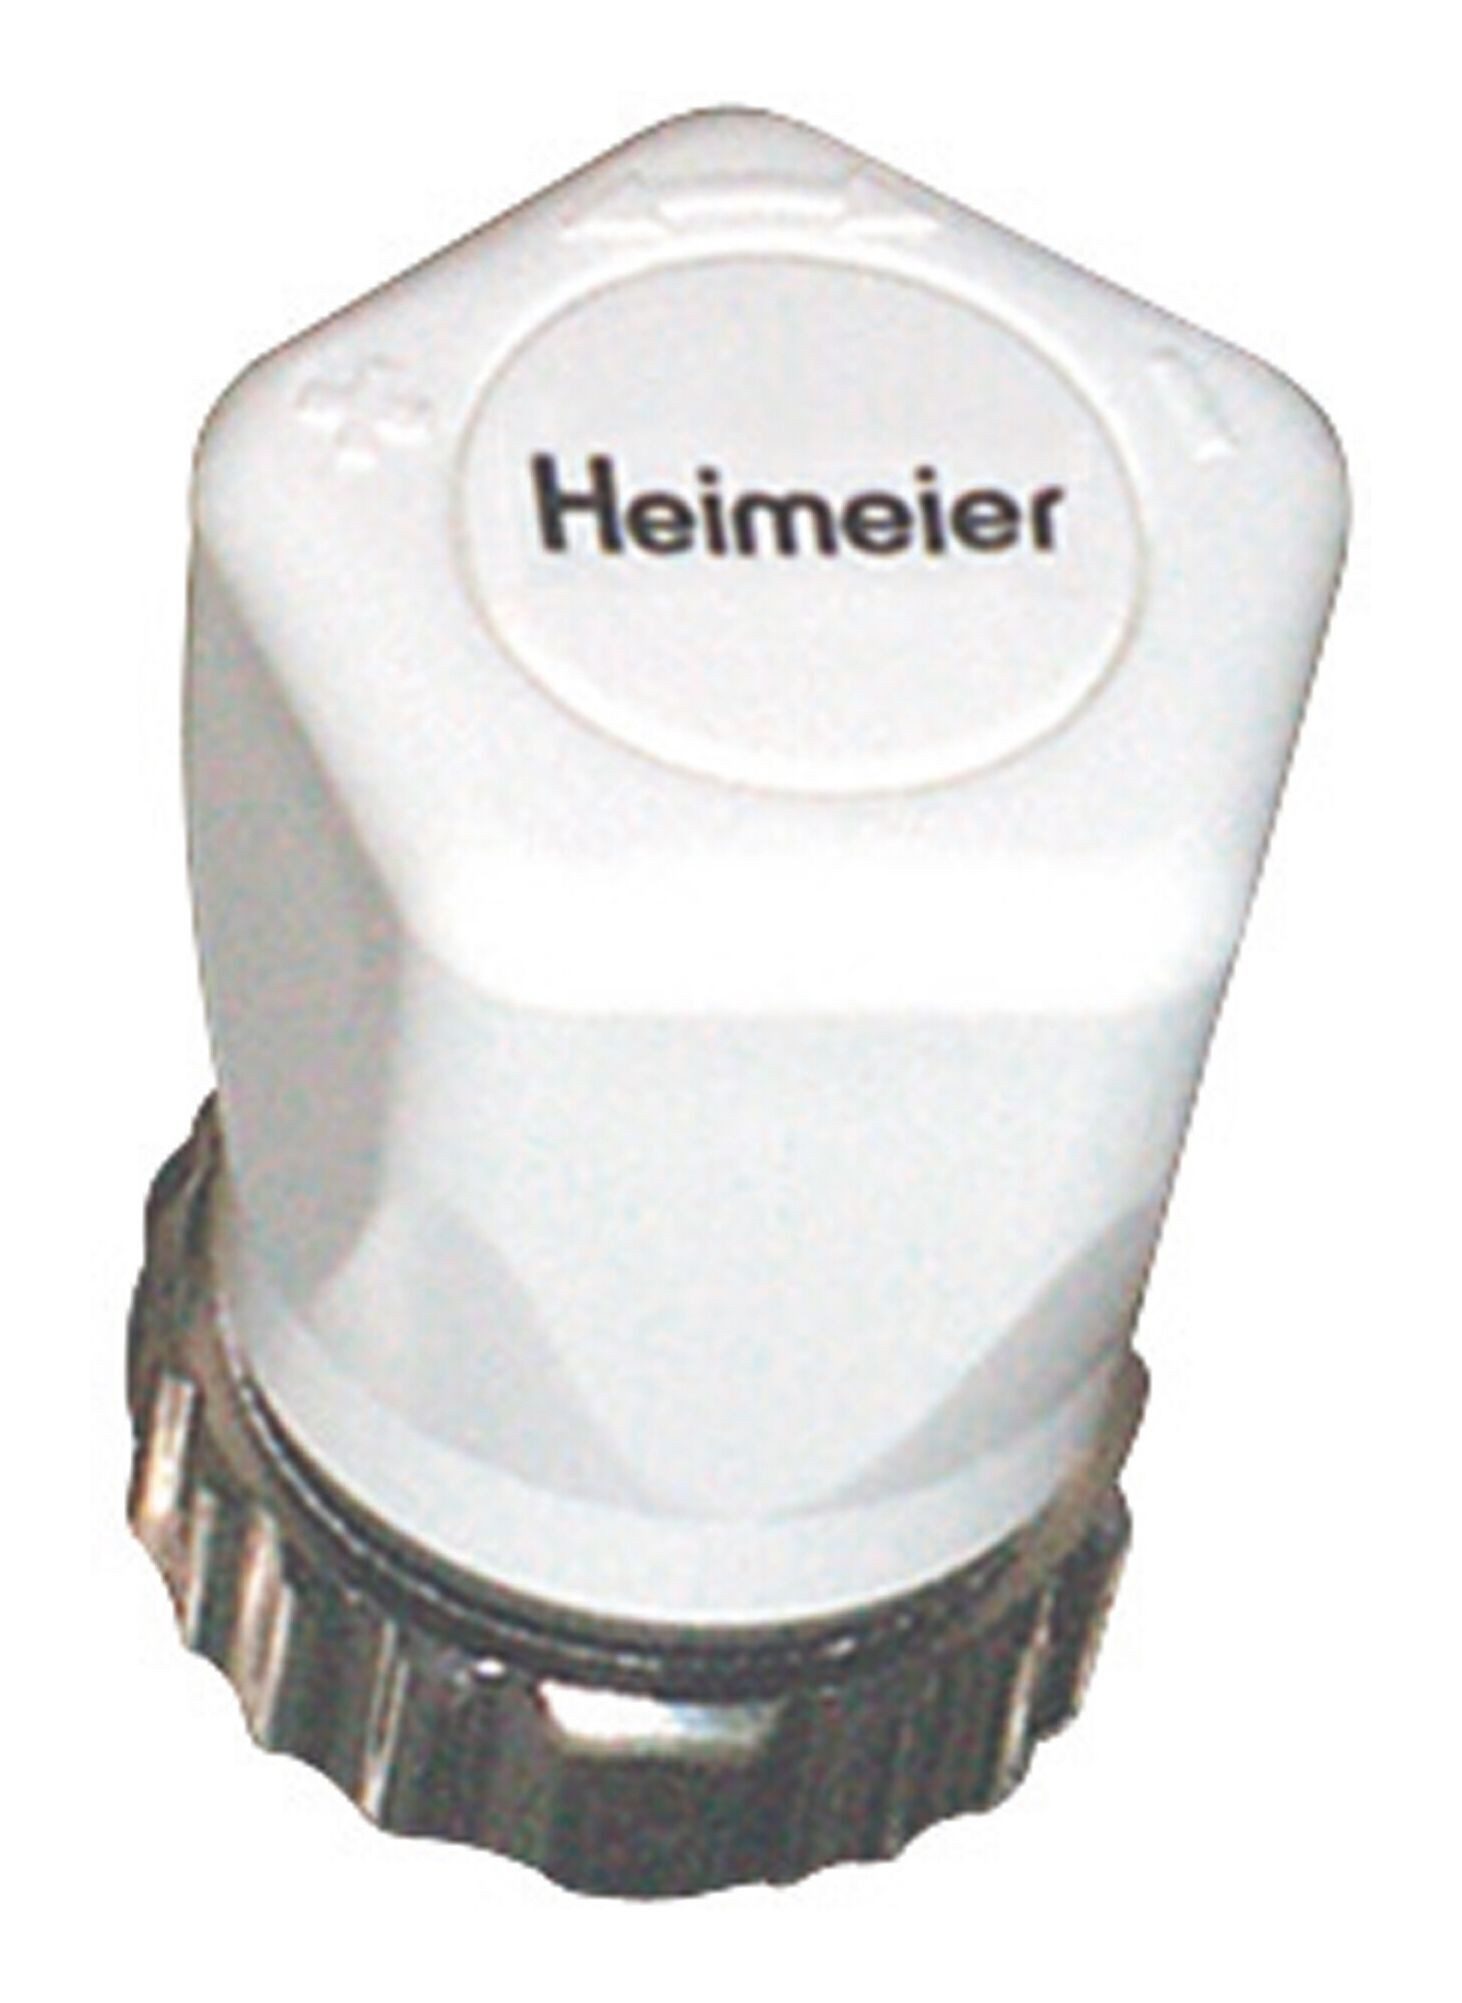 IMI Heimeier Heizkörperthermostat, Handregulierkappe weiß RAL 9016, mit Rändelmutter